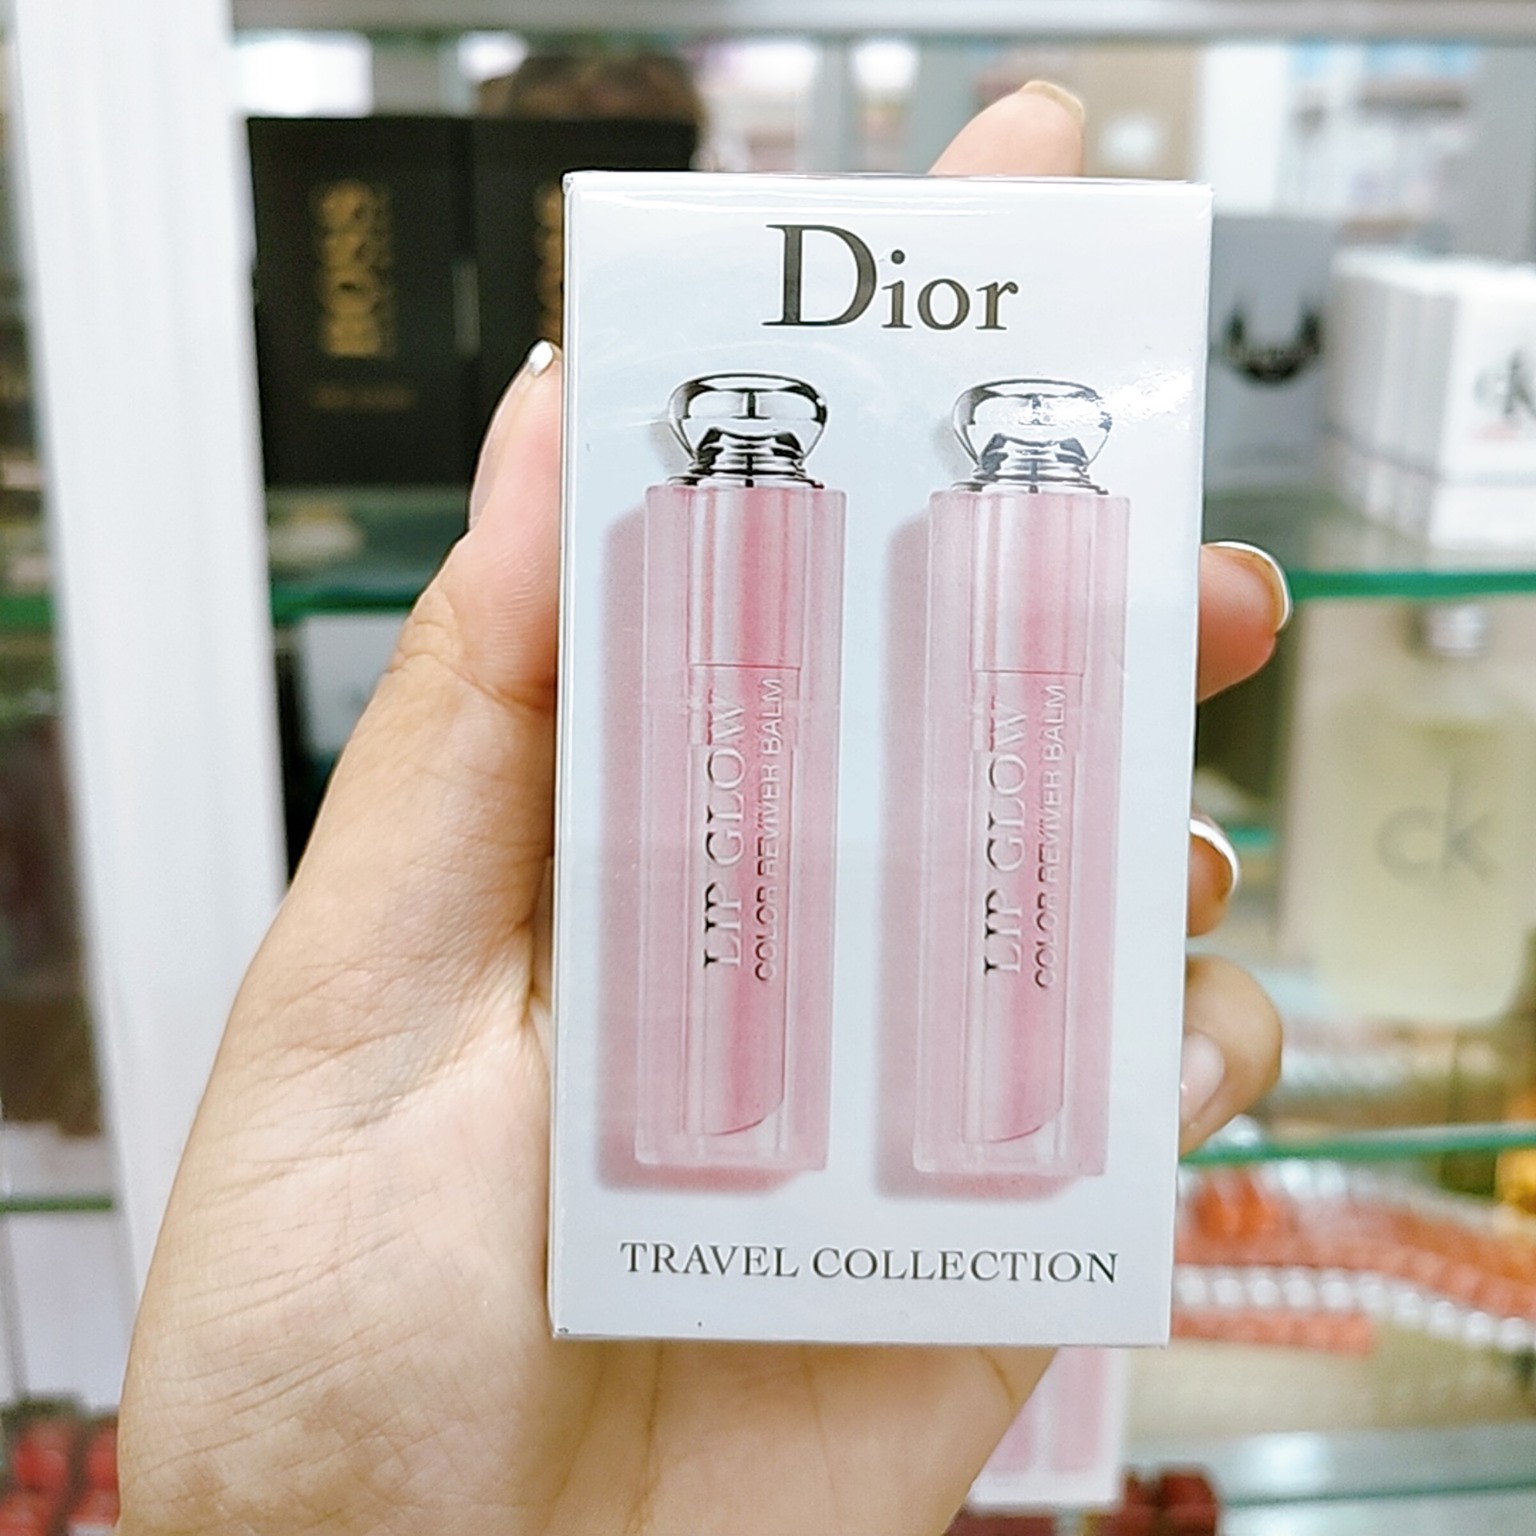 Set son dưỡng Dior Lip Glow Duo 001 Pink 004 Coral  Mỹ Phẩm Hàng Hiệu  Pháp  Paris in your bag